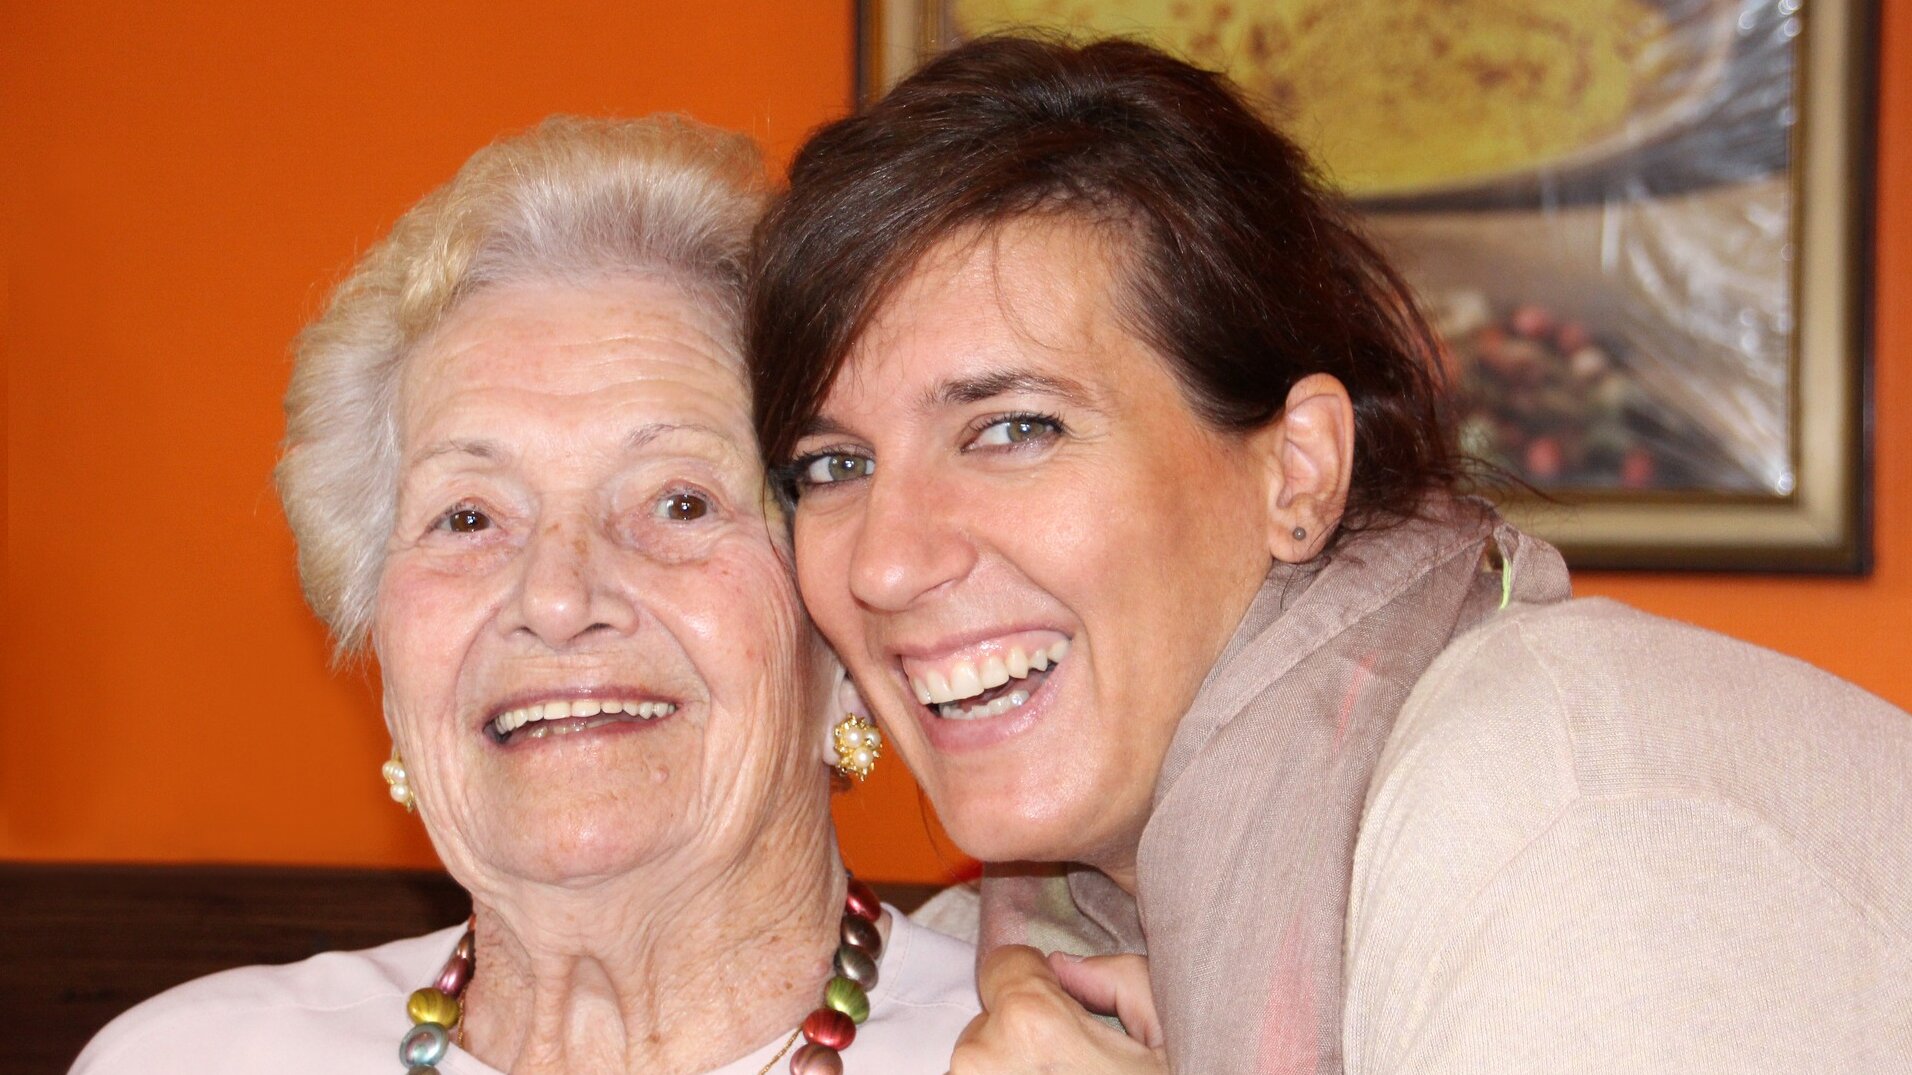 Auf dem Foto sieht man eine ältere und eine jüngere Frau im Porträt